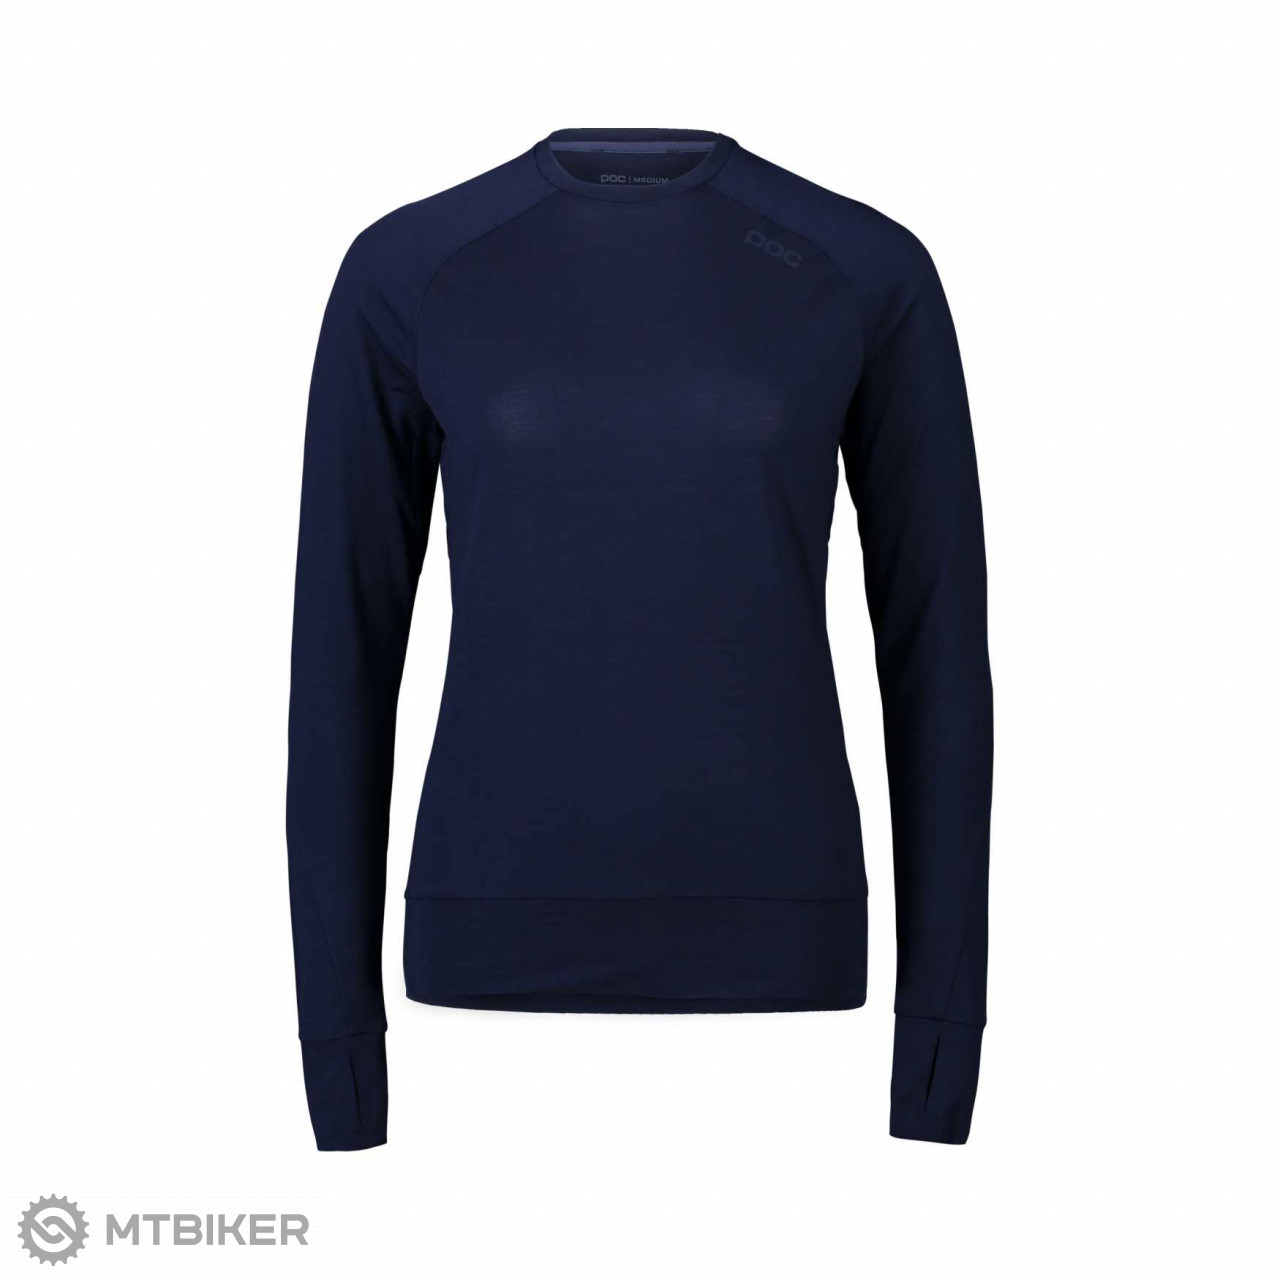 POC Light Merino Jersey women's sweatshirt, turmaline navy